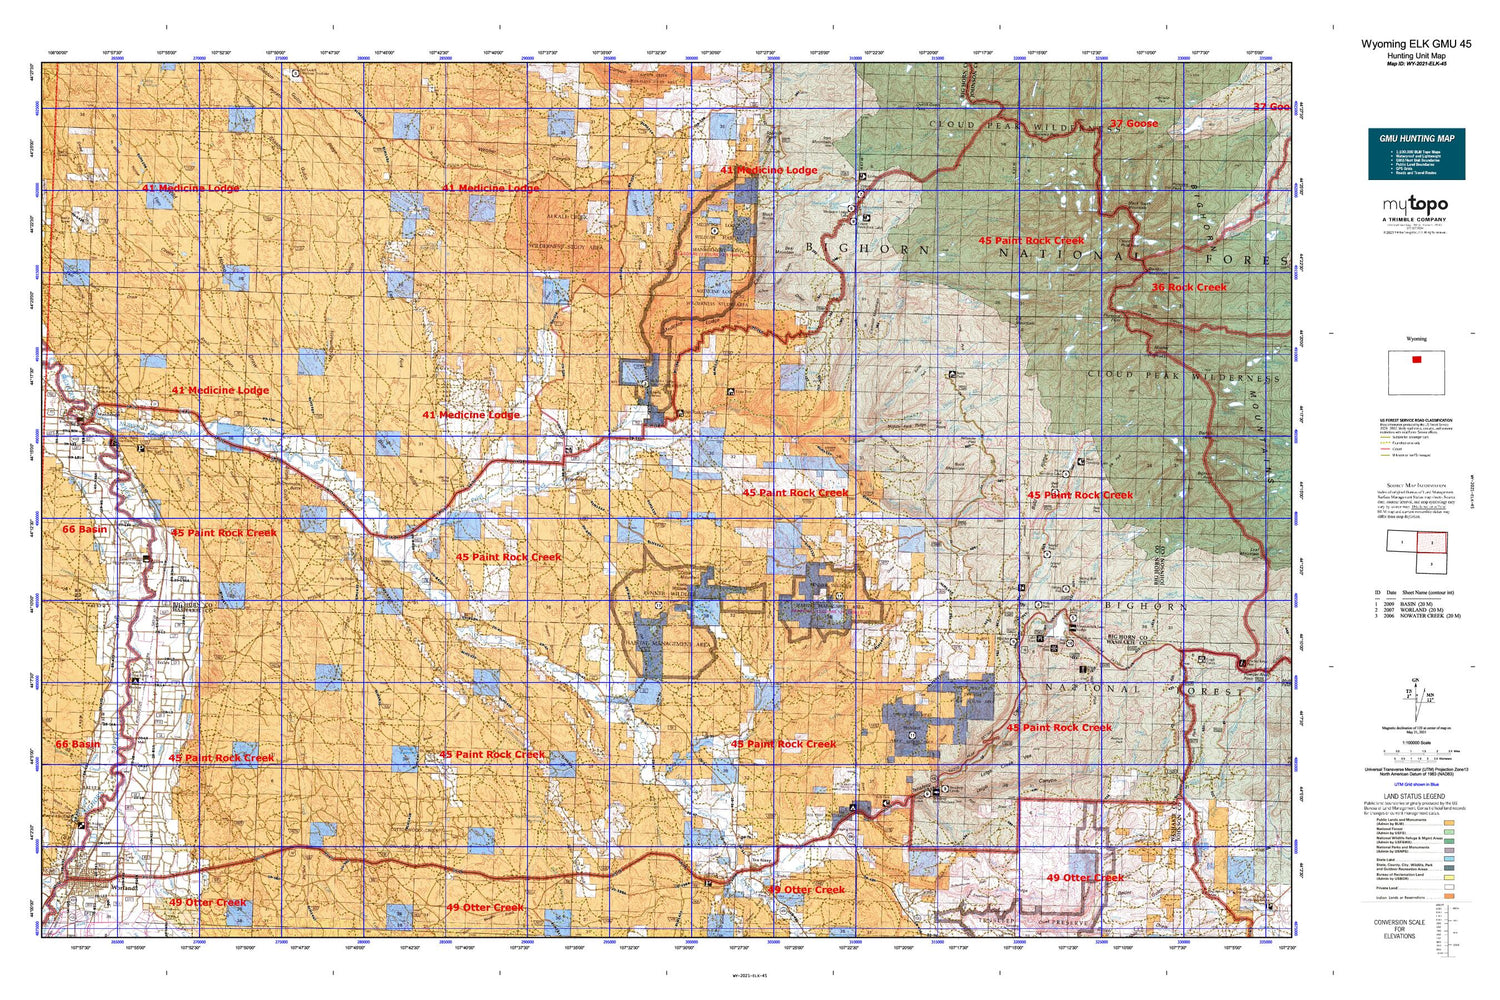 Wyoming Elk GMU 45 Map Image